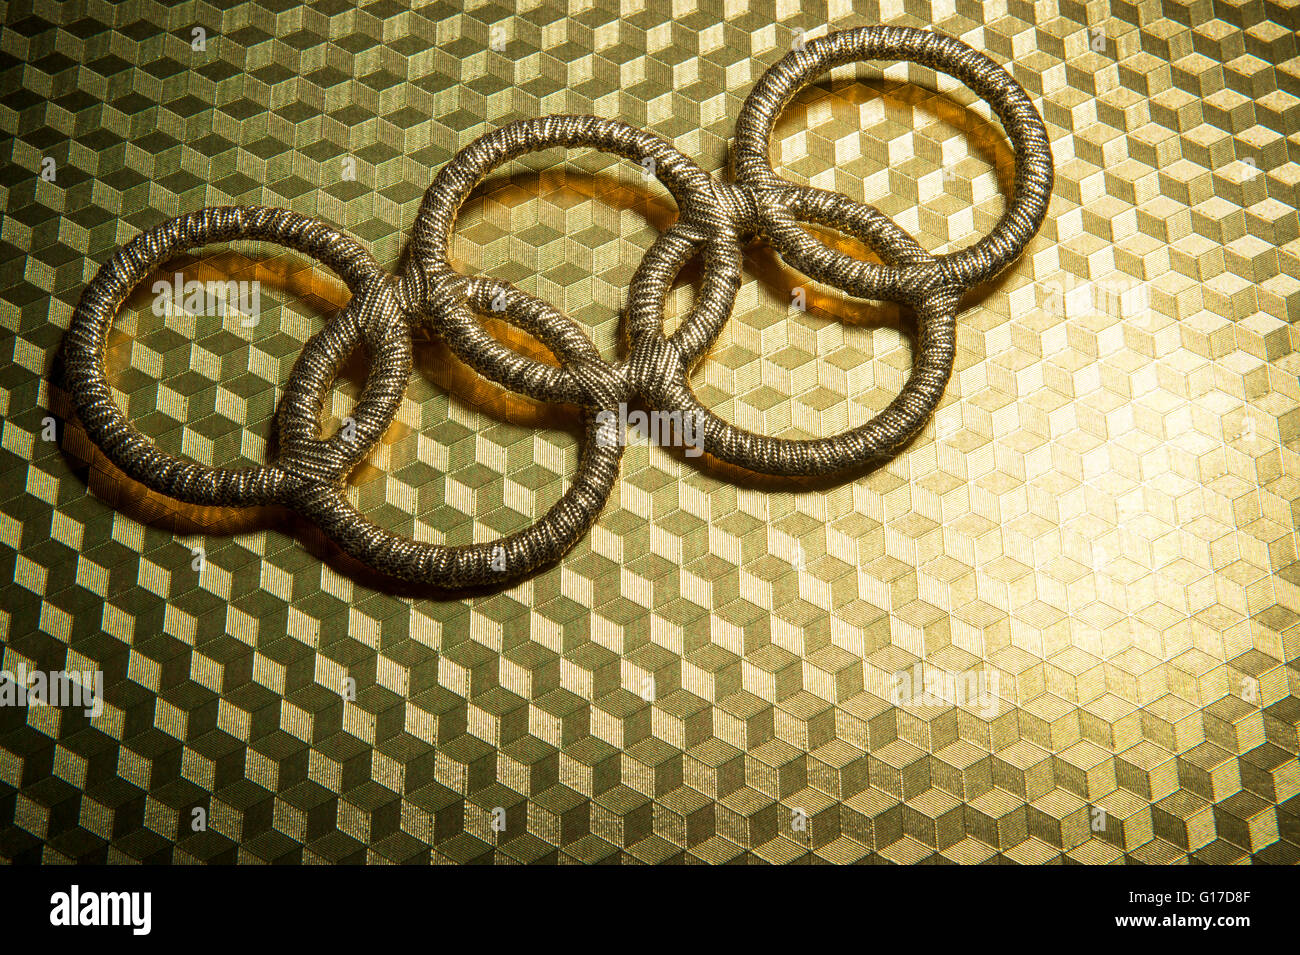 RIO DE JANEIRO - Febrero 3, 2015: el símbolo de los anillos olímpicos de oro se sienta spotlit sobre fondo dorado brillante. Foto de stock